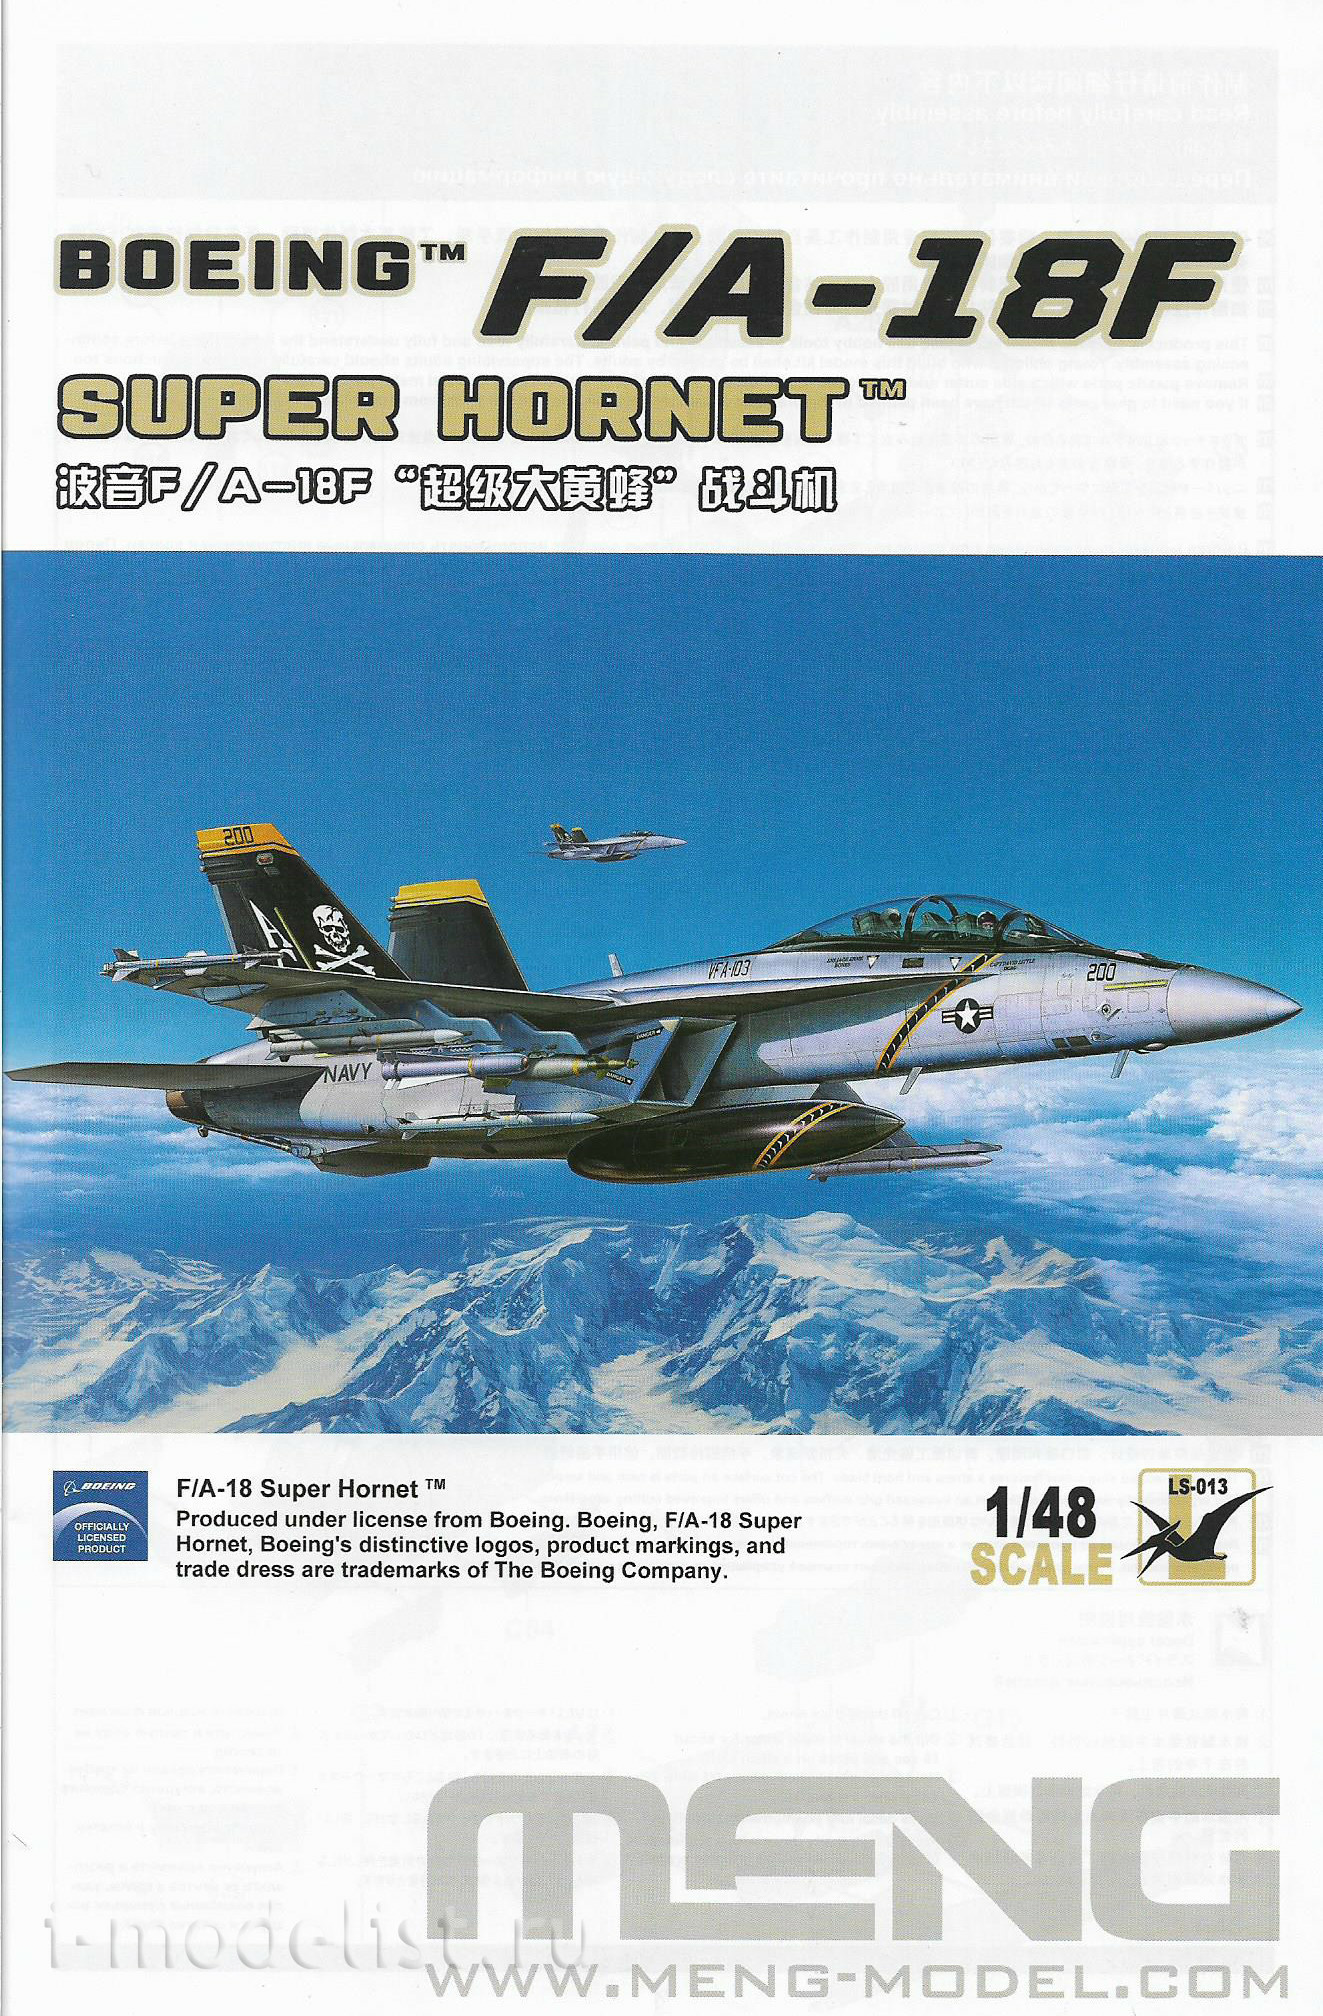 LS-013 Meng 1/48 Истребитель F/A-18F Super Hornet